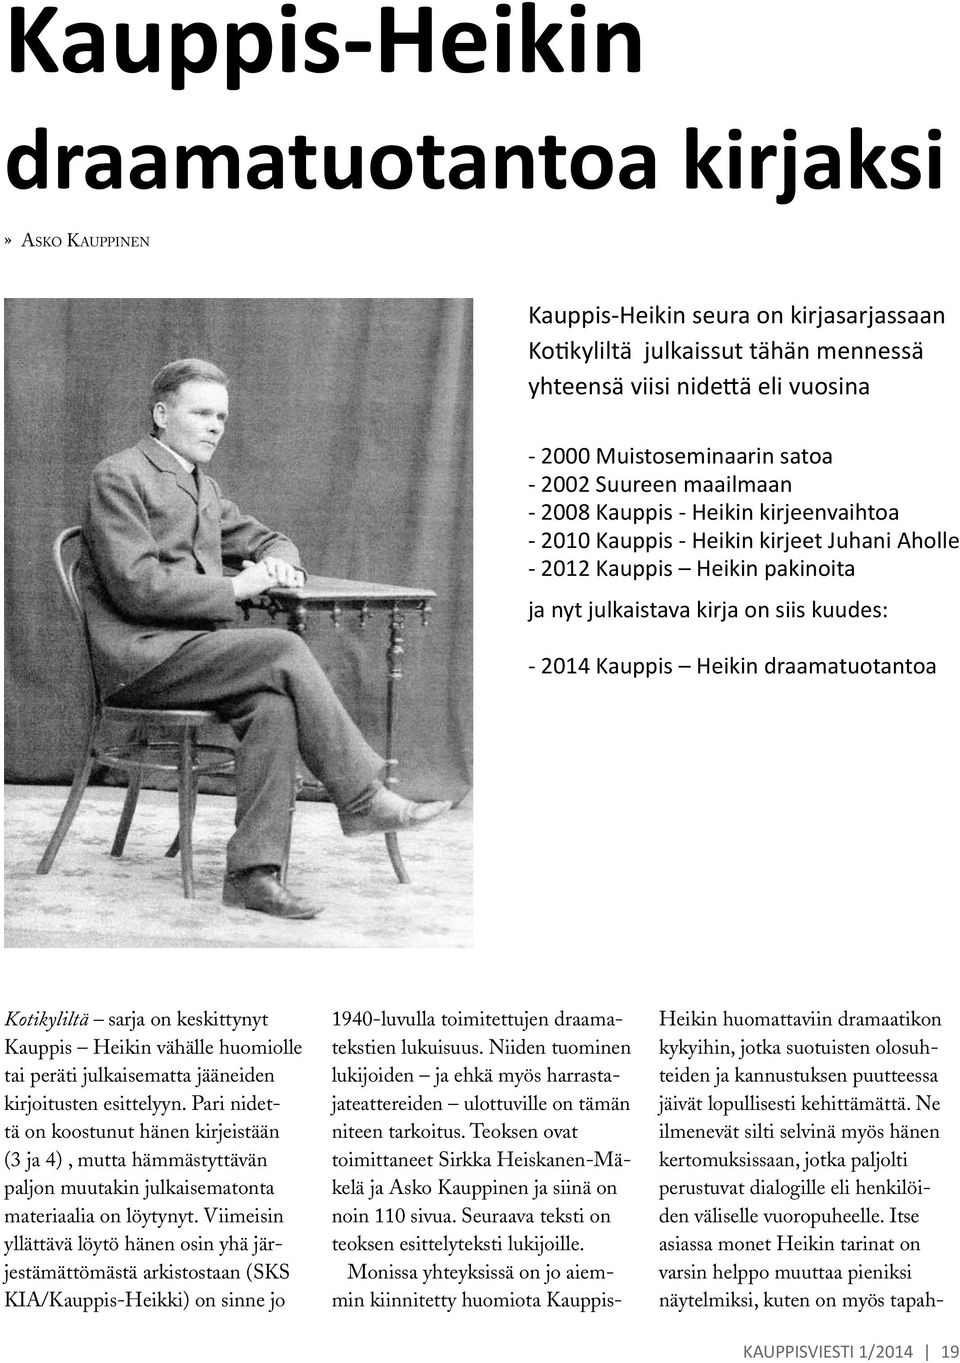 Heikin draamatuotantoa Kotikyliltä sarja on keskittynyt Kauppis Heikin vähälle huomiolle tai peräti julkaisematta jääneiden kirjoitusten esittelyyn.